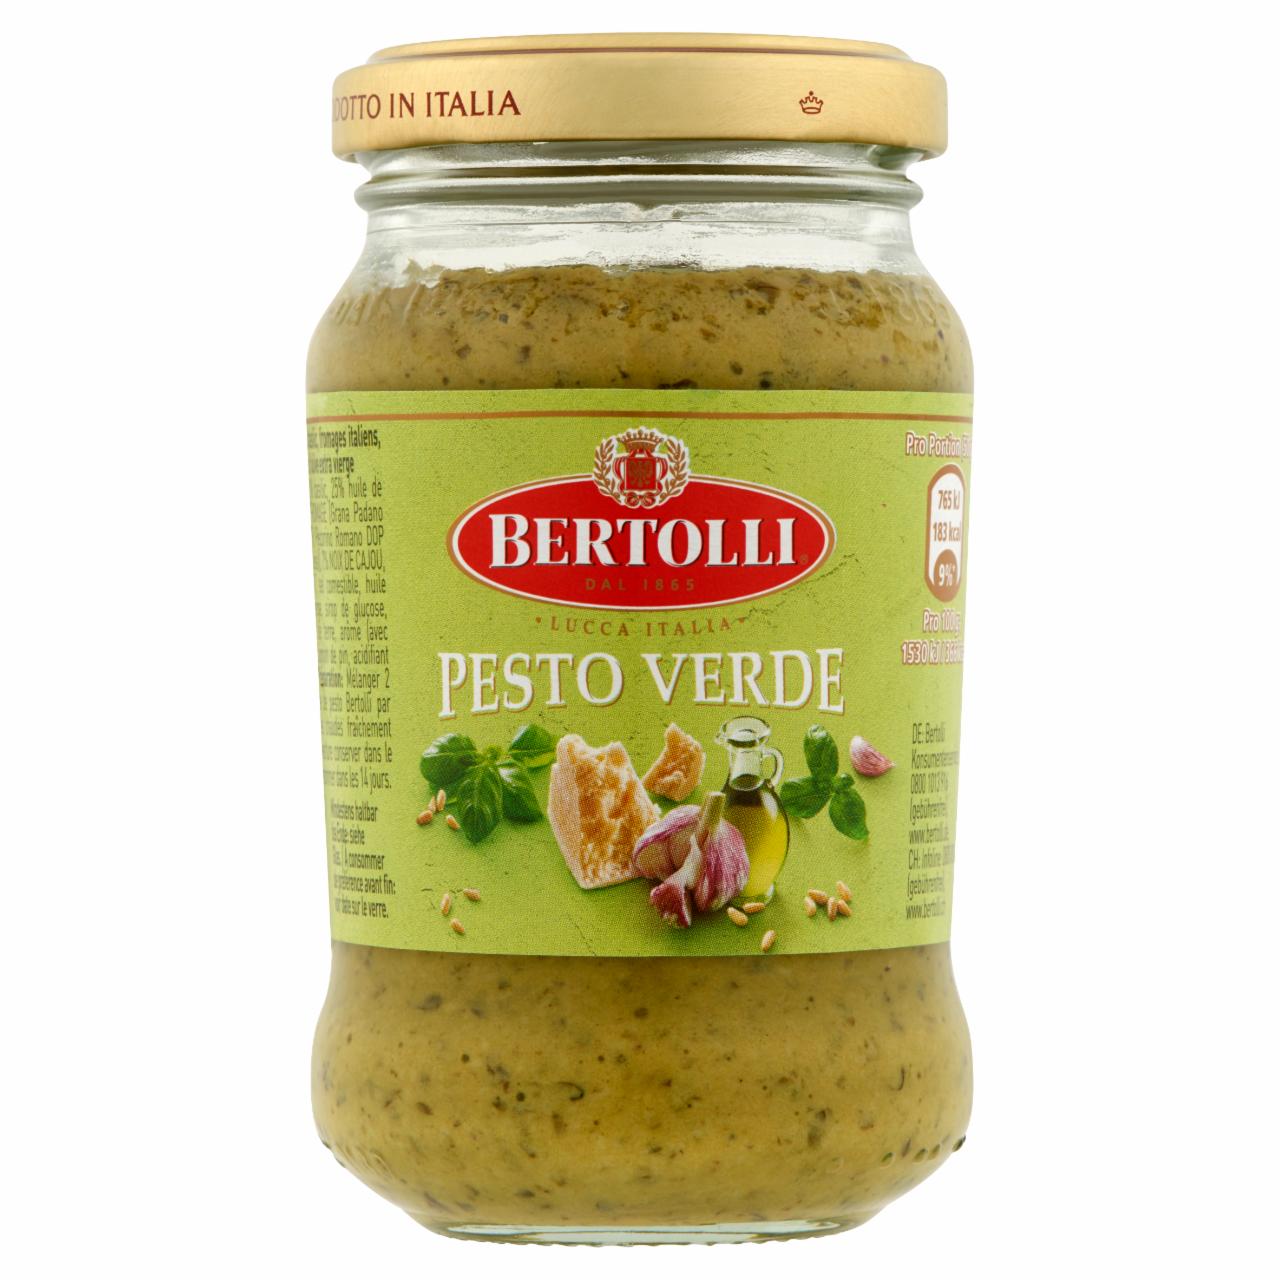 Képek - Pesto Verde pesto szósz bazsalikommal és olasz sajtokkal Bertolli